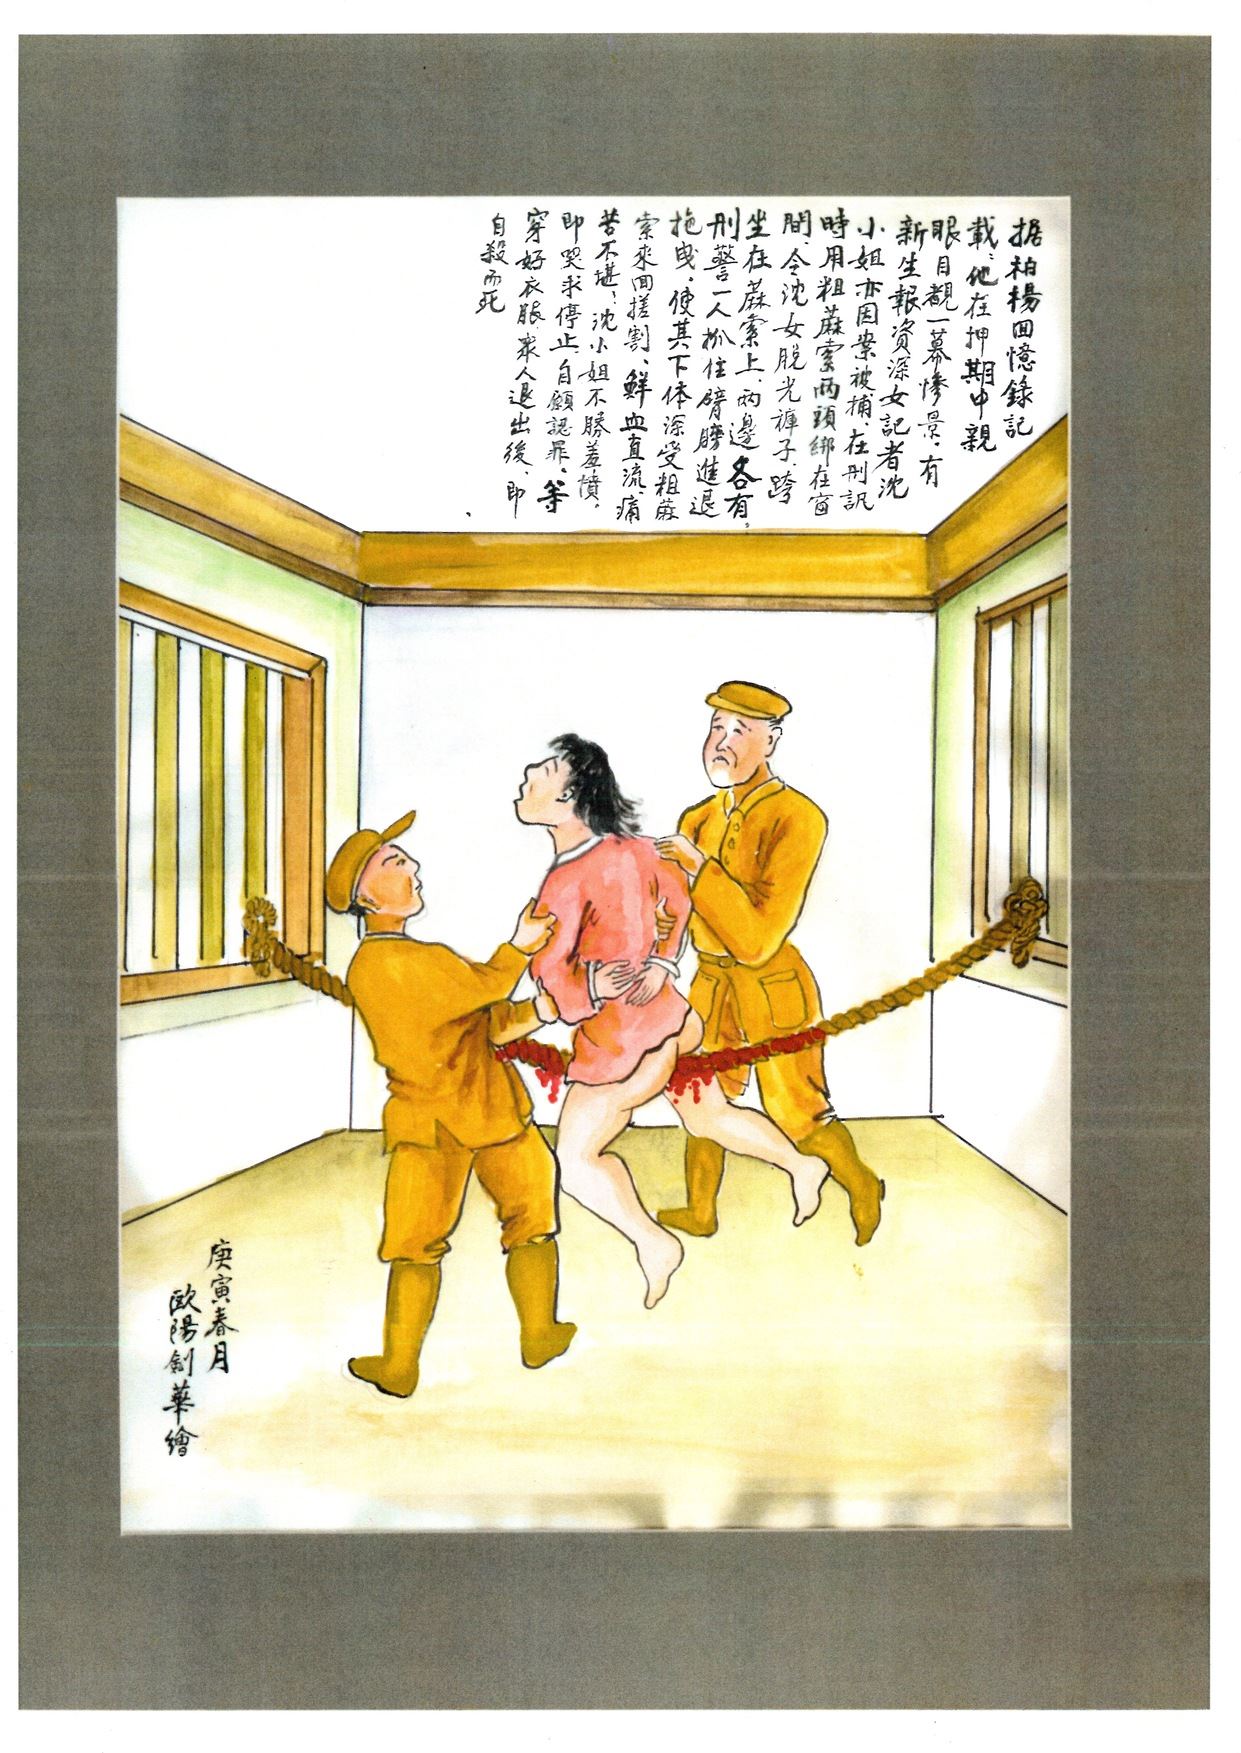 歐陽劍華〈坐麻繩〉，描繪作家柏楊在獄中親眼目睹《新生報》記者沈嫄璋受刑求後自殺身亡的慘狀